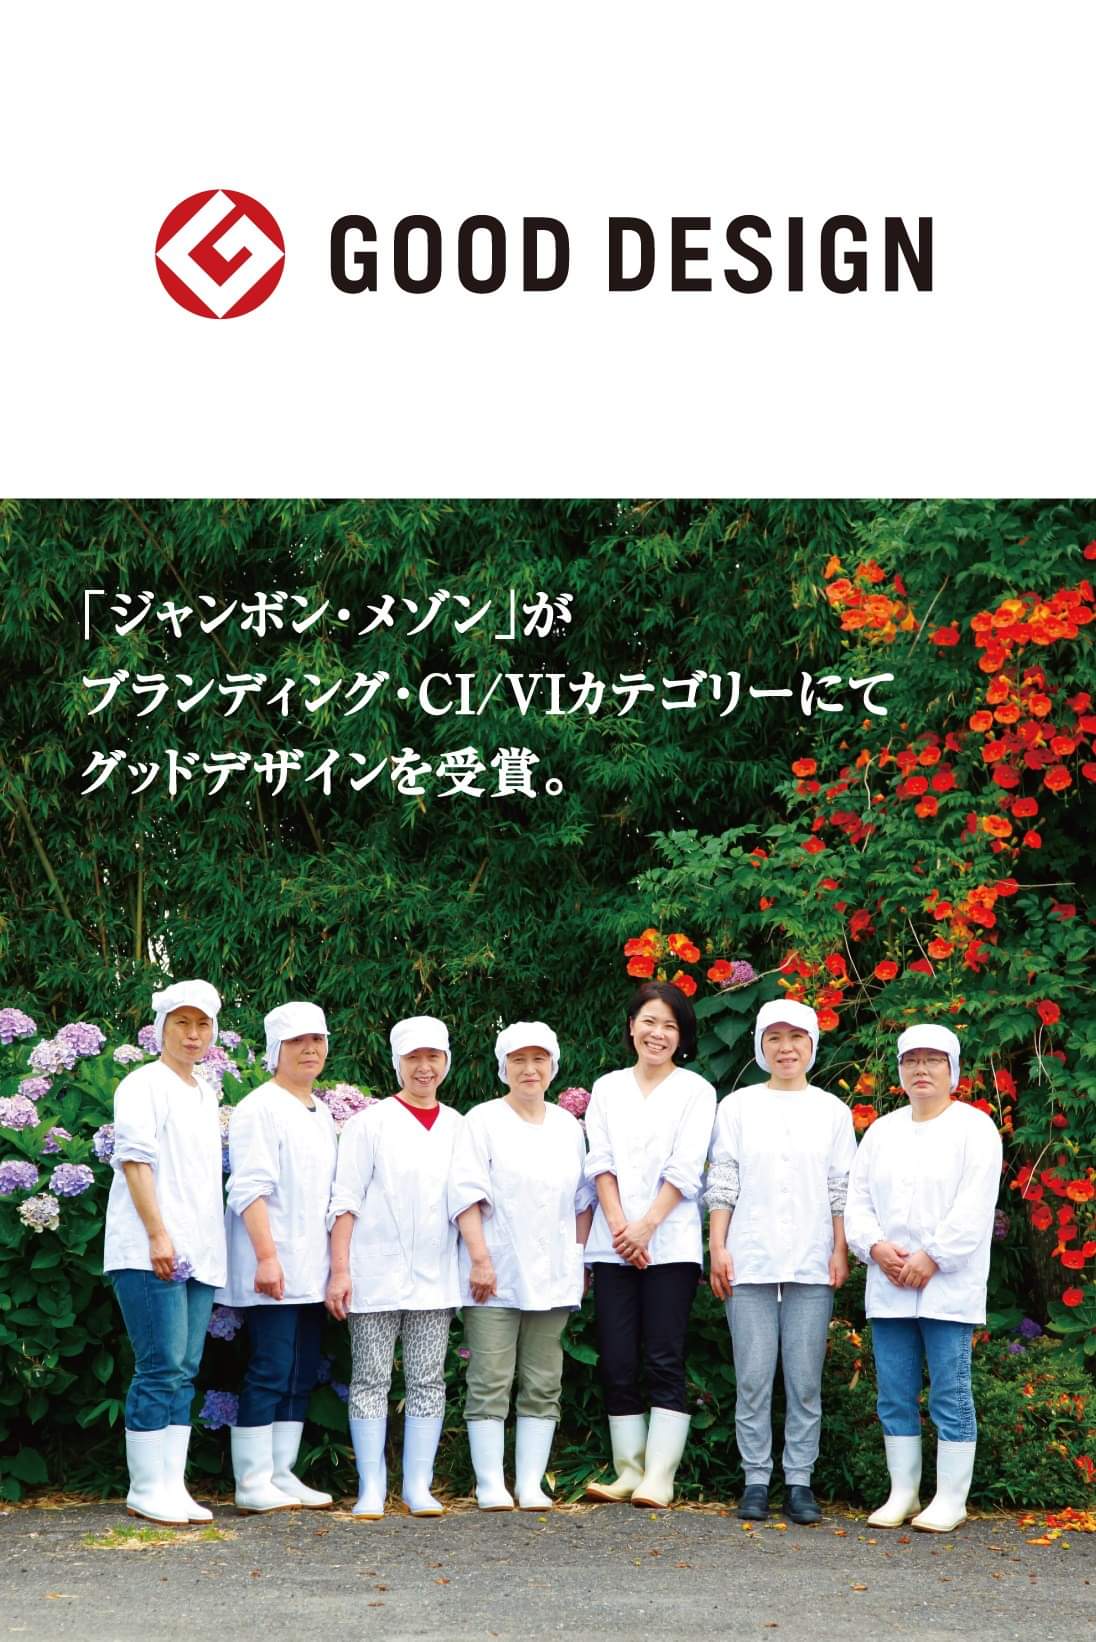 【ご報告】good design 2020 受賞しました❗